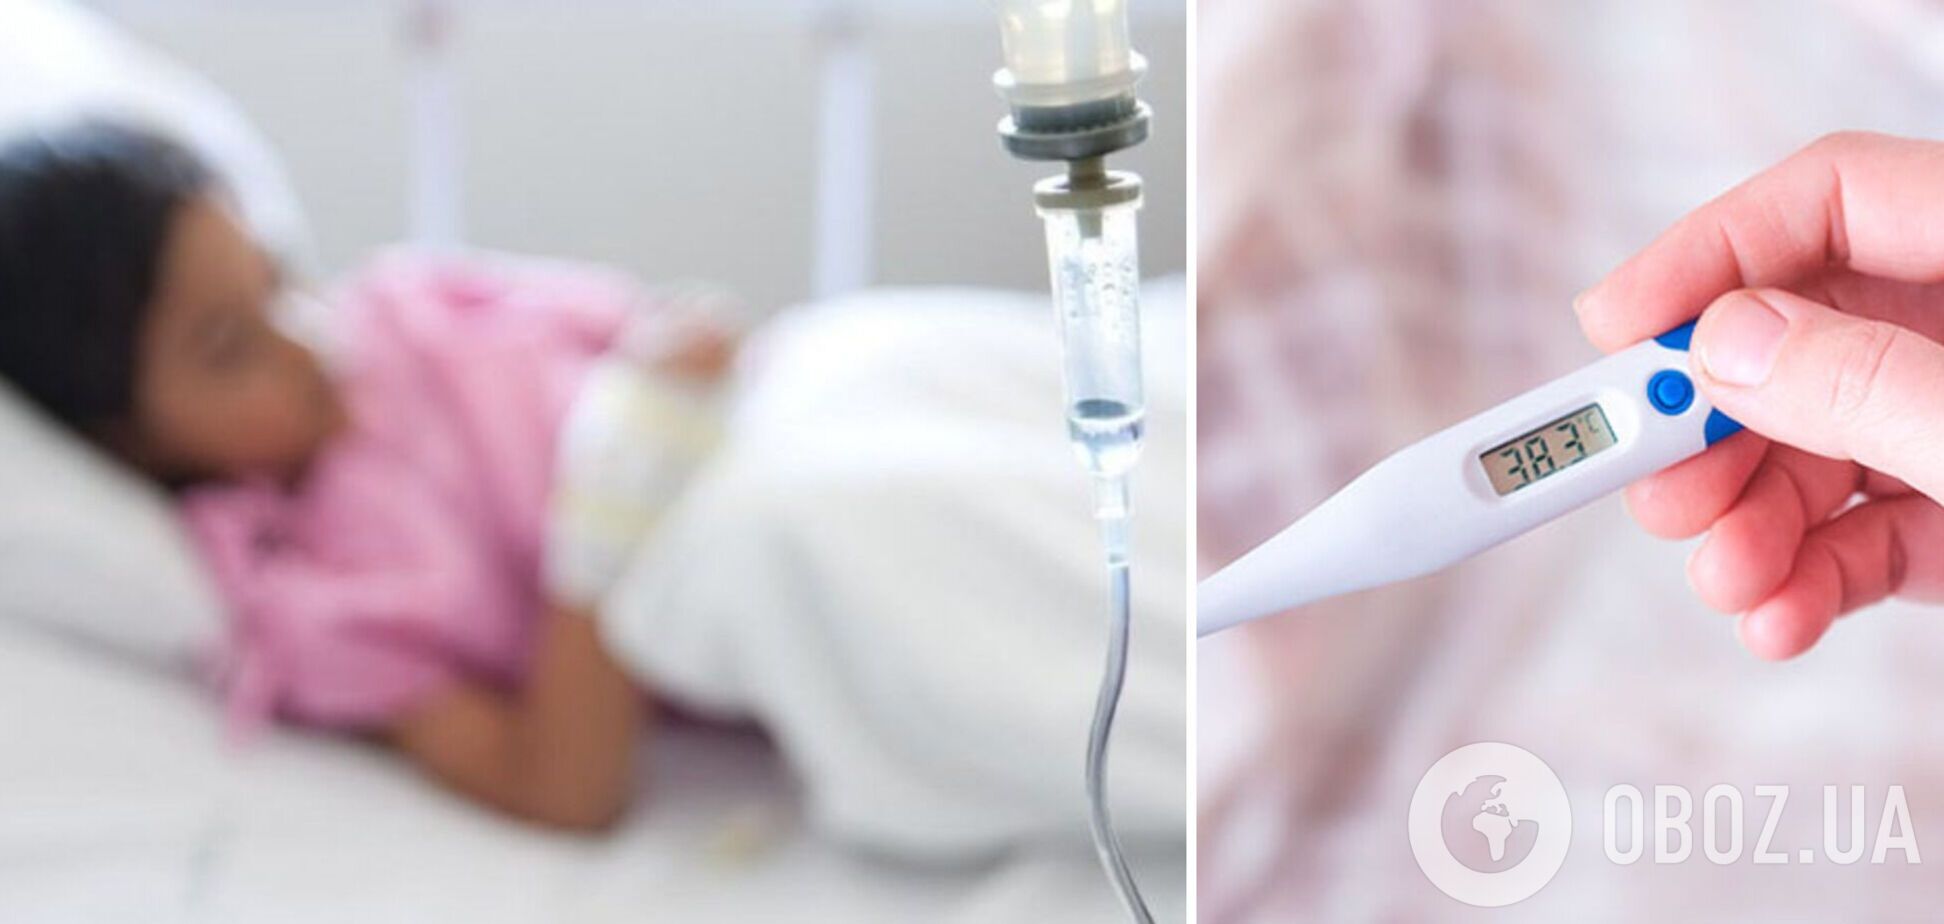 Неделю лечили дома: во Львове в больнице умерла 8-летняя девочка, медики назвали вероятную причину